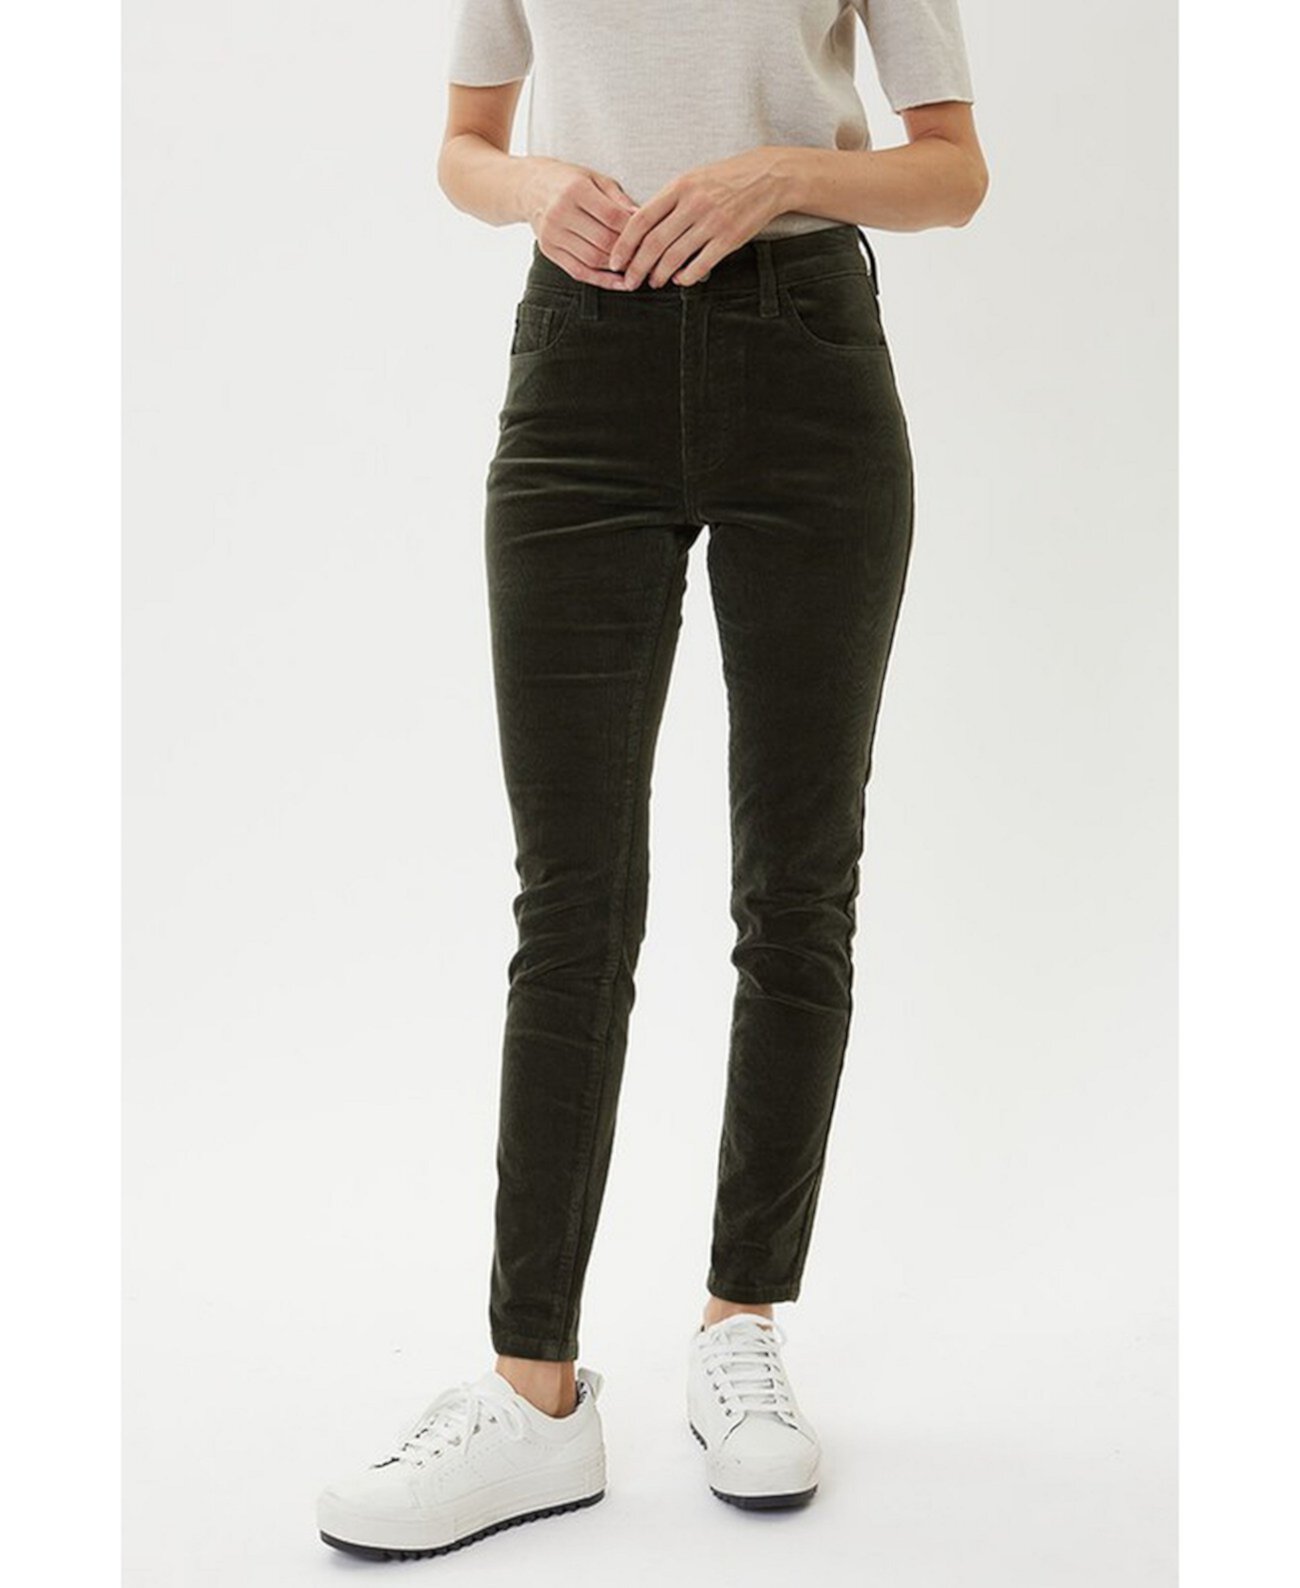 Женские джинсы скинни стандартного формата с высокой посадкой Kancan